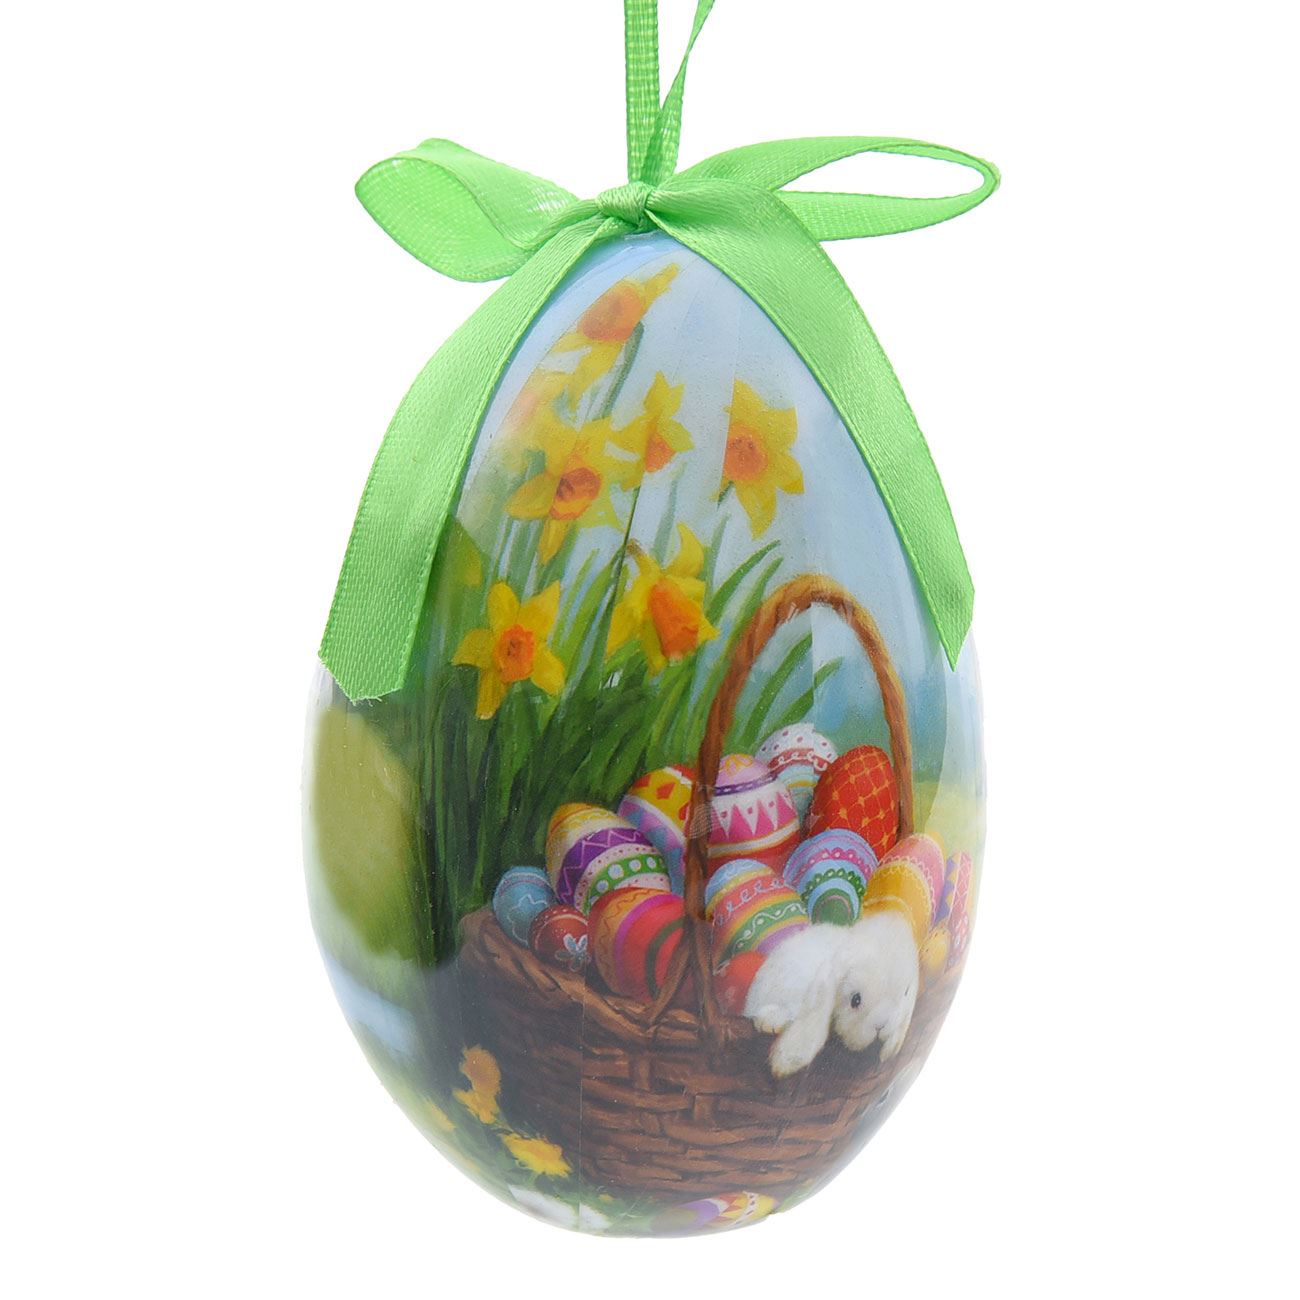 Húsvéti tojás - Nárciszokkal 10 cm 